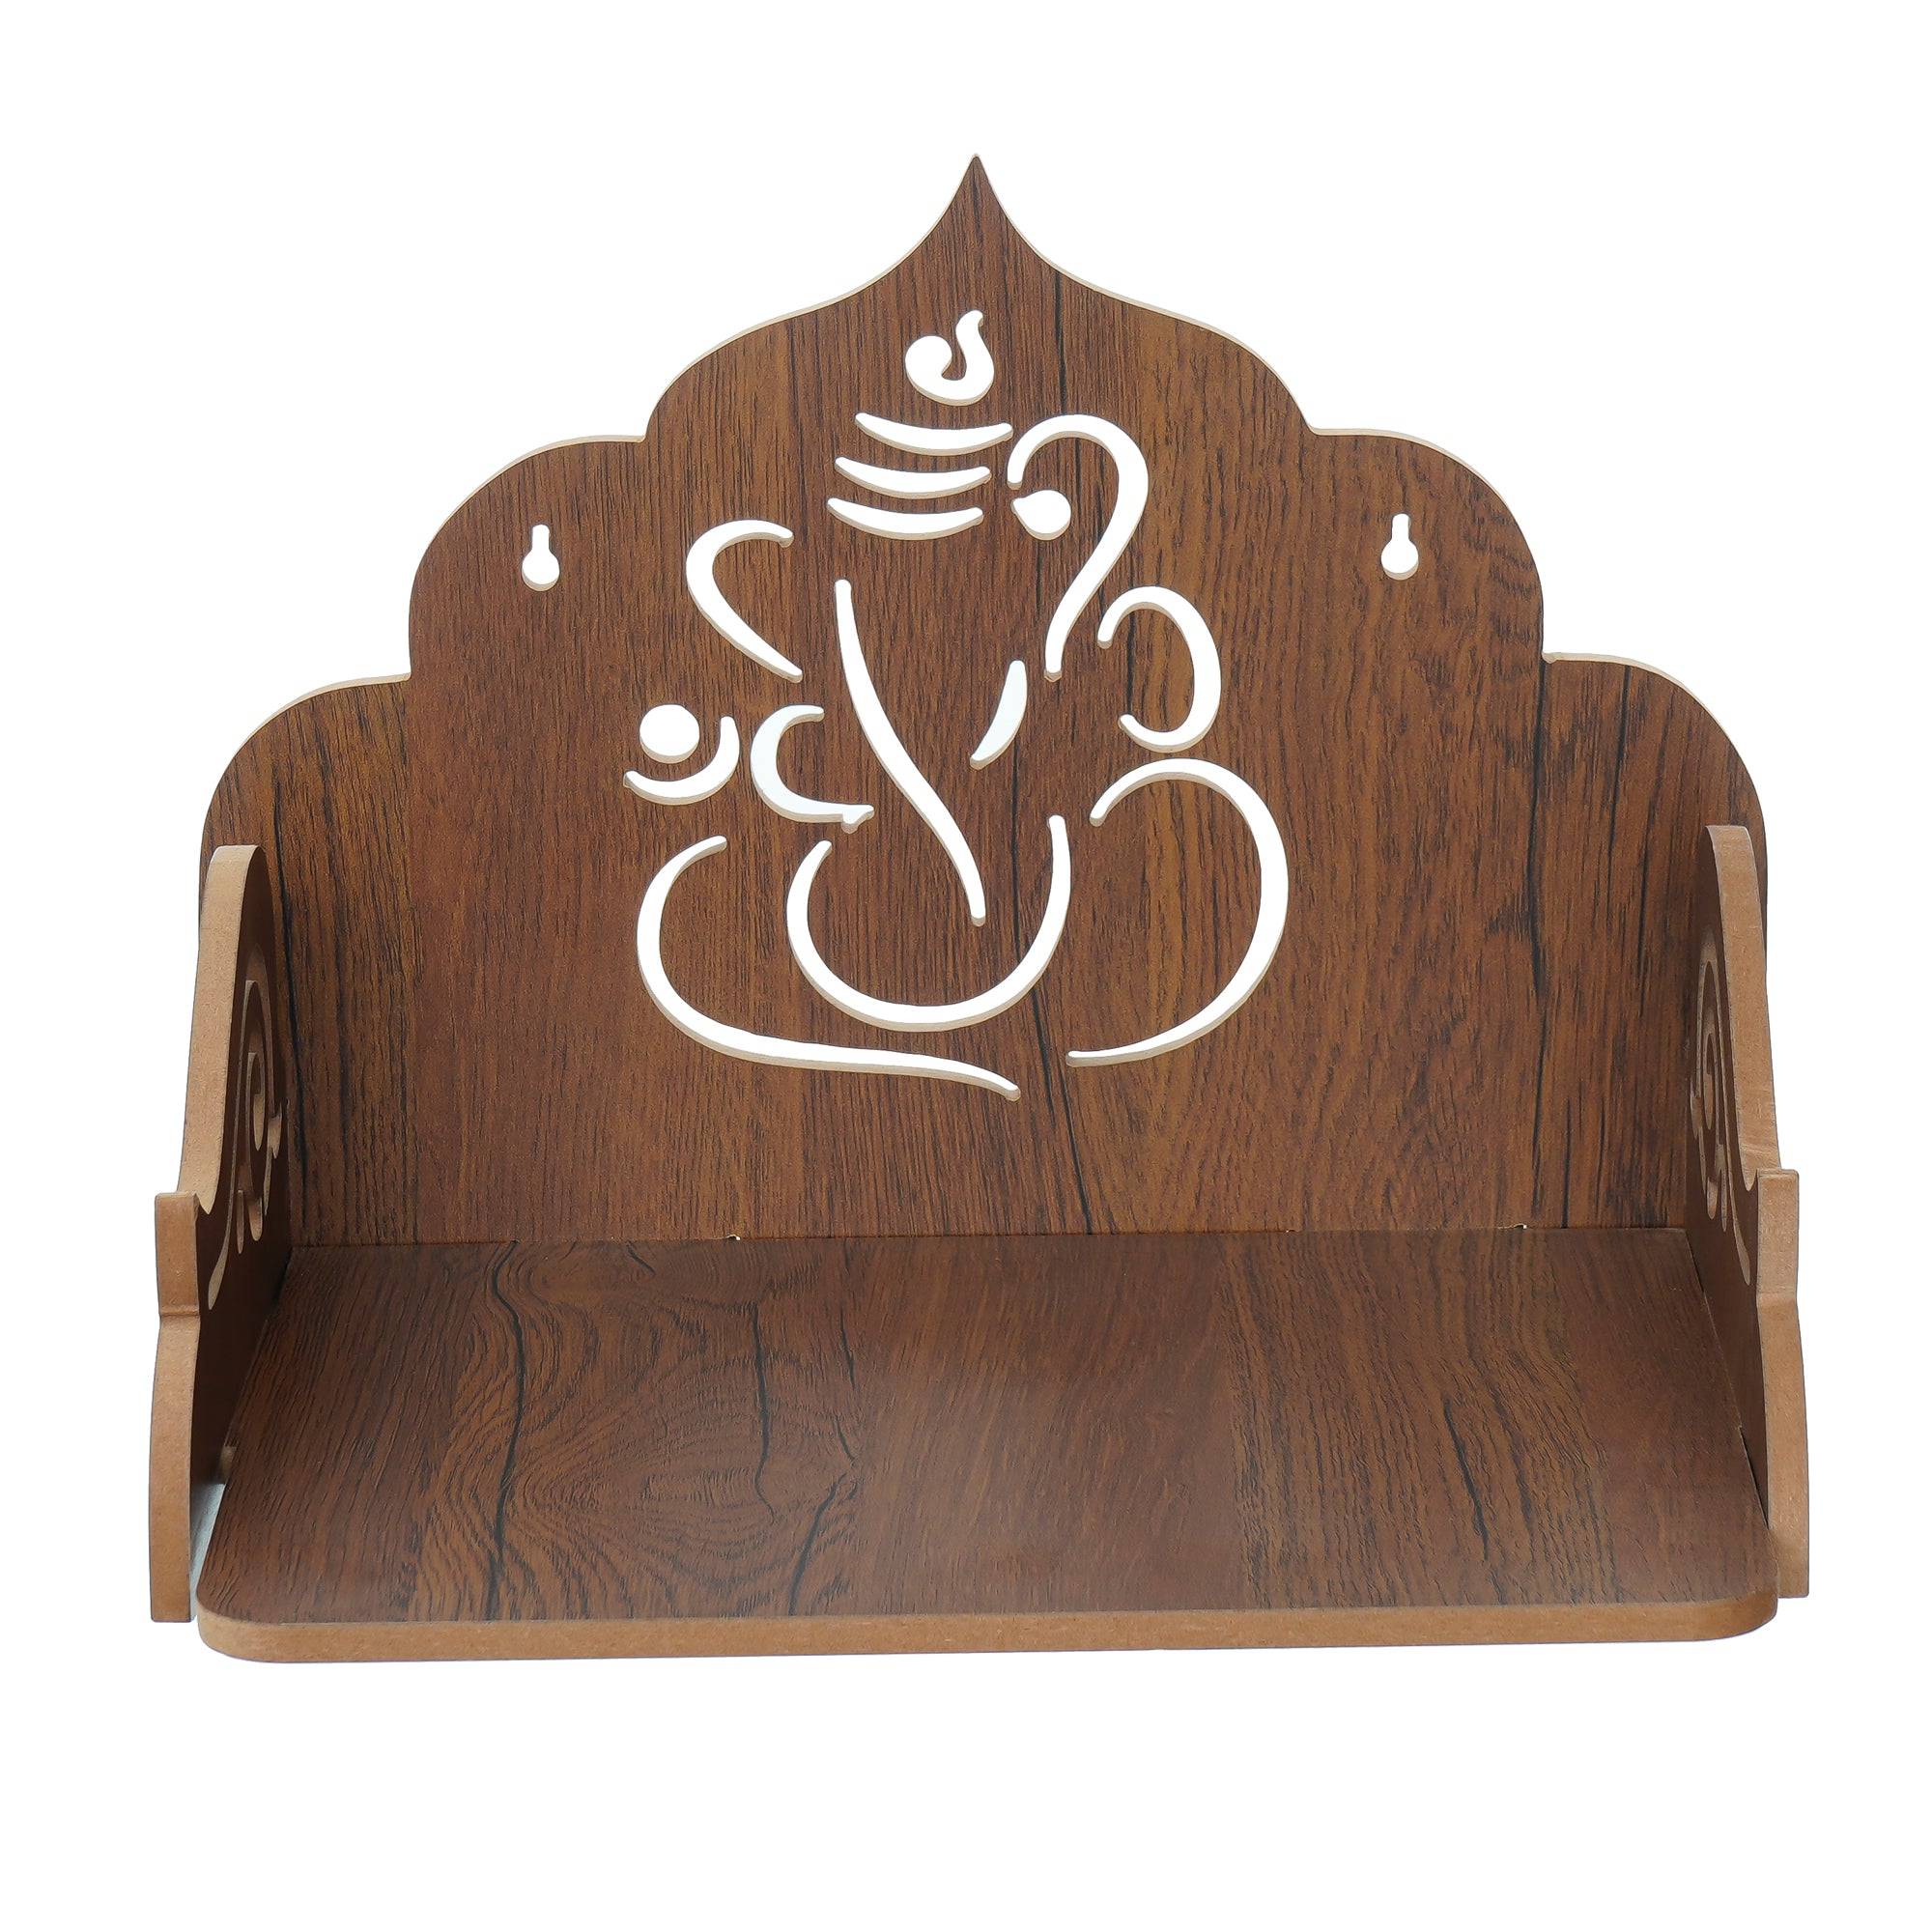 Ganesha Design Laminated Wood Pooja Temple/Mandir 5